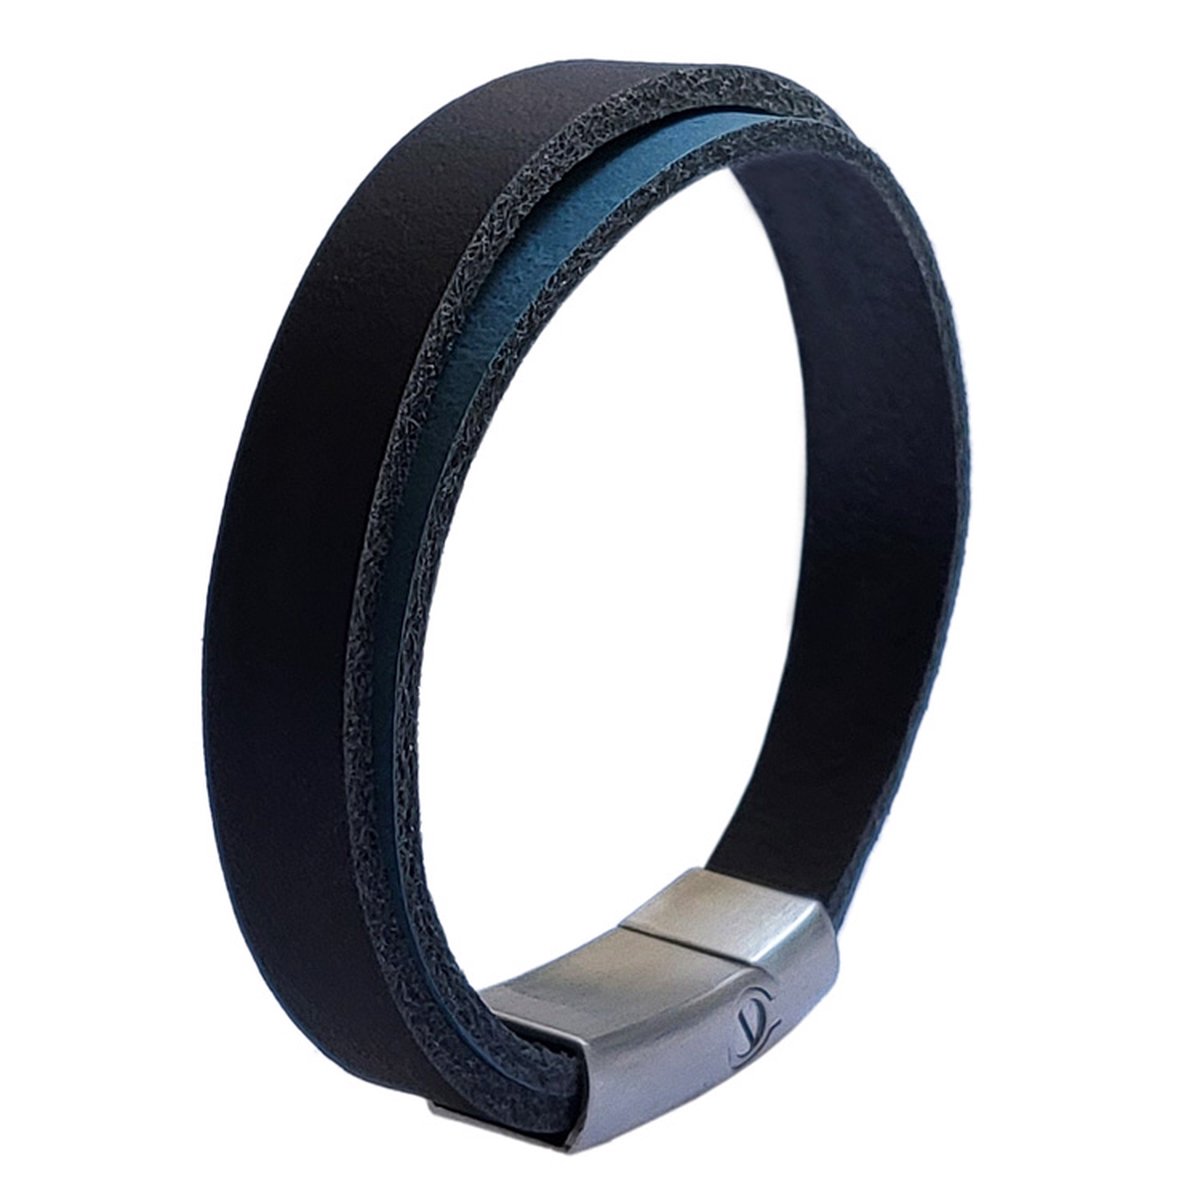 As armband Double schuifsluiting zwart-blauw 21 cm